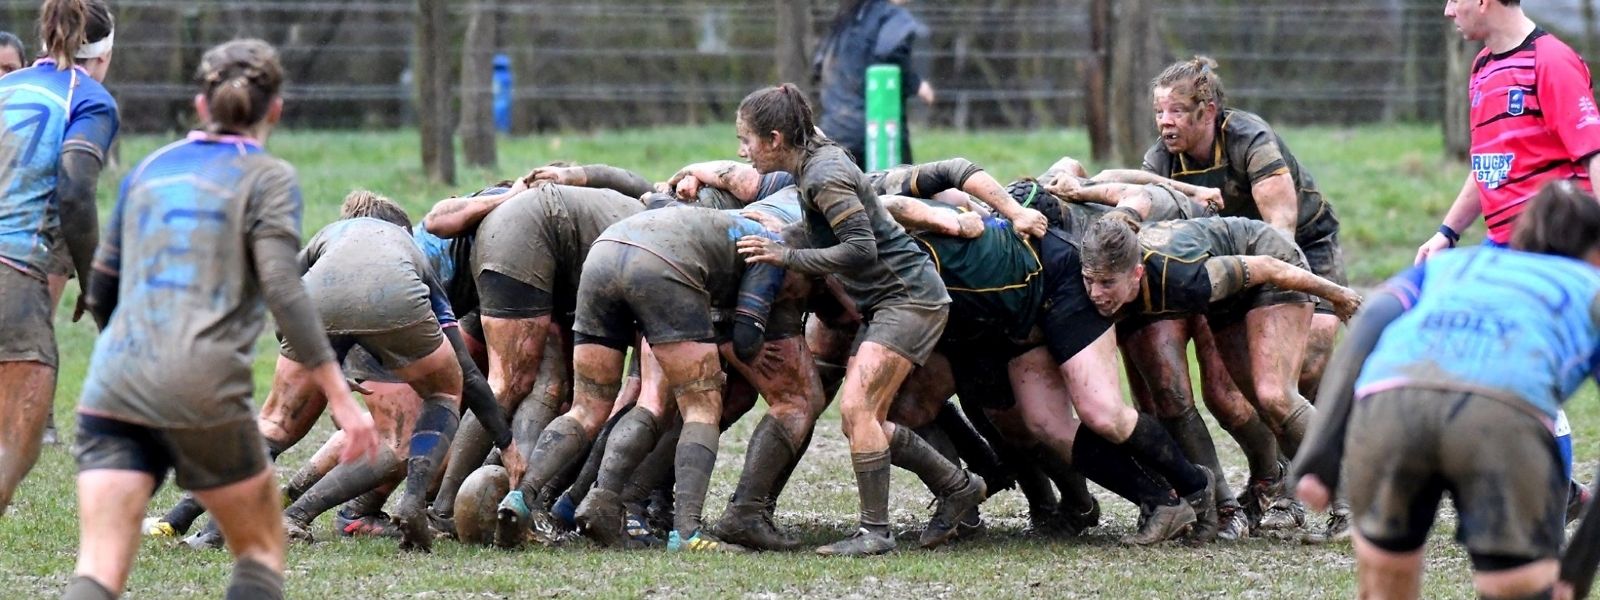 Das Frauenteam Rugby Ladies Walferdingen wurde vor rund 12 Jahren gegründet und spielt derzeit in der zweiten belgischen Liga.